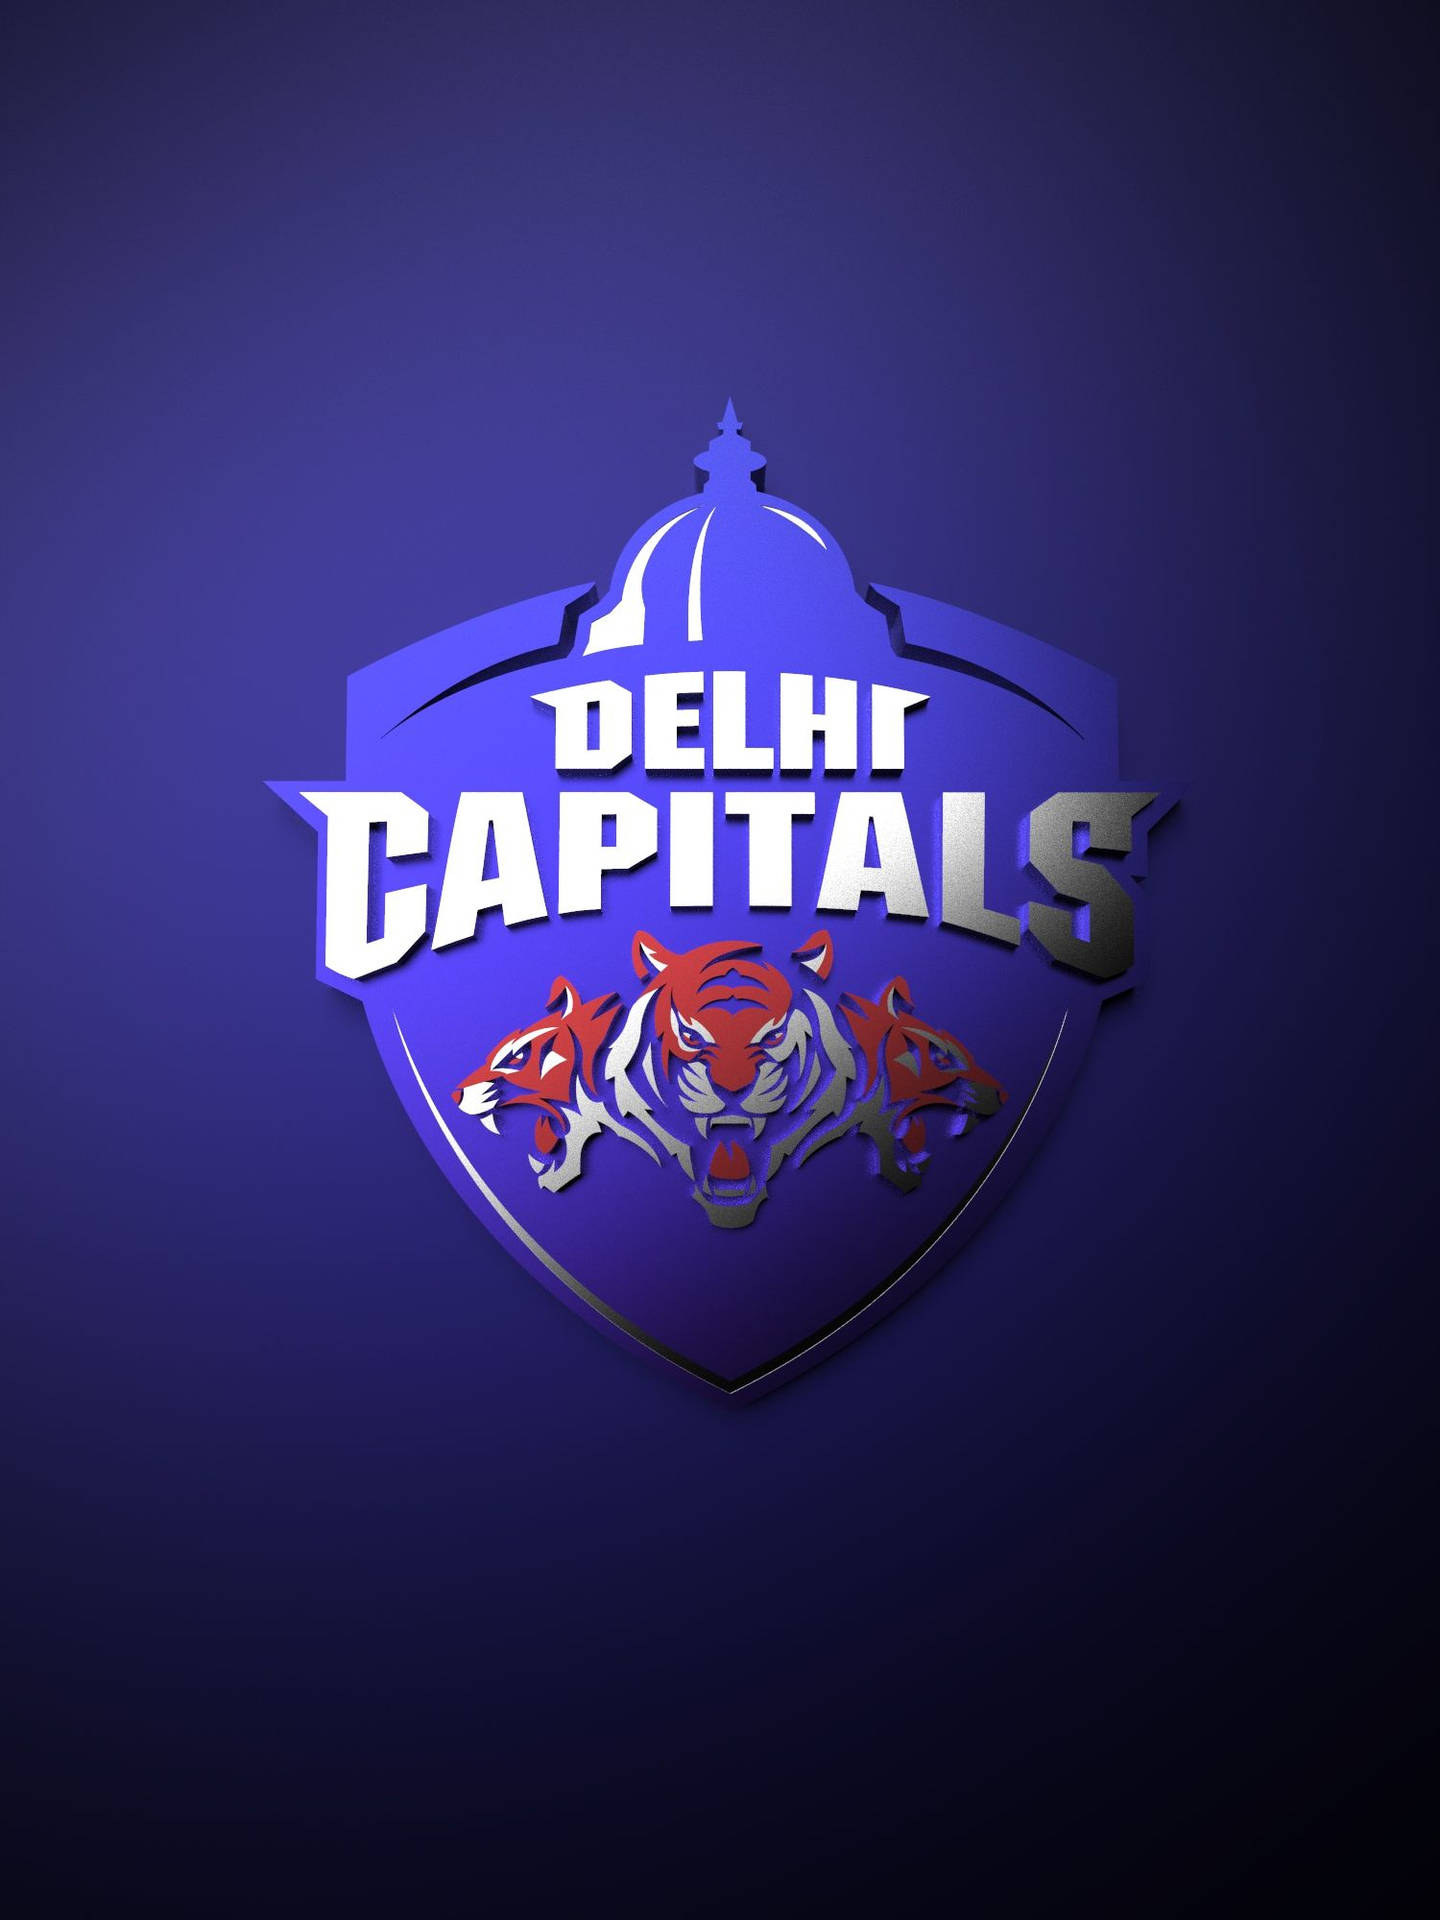 Delhicapitals Logo Wallpaper